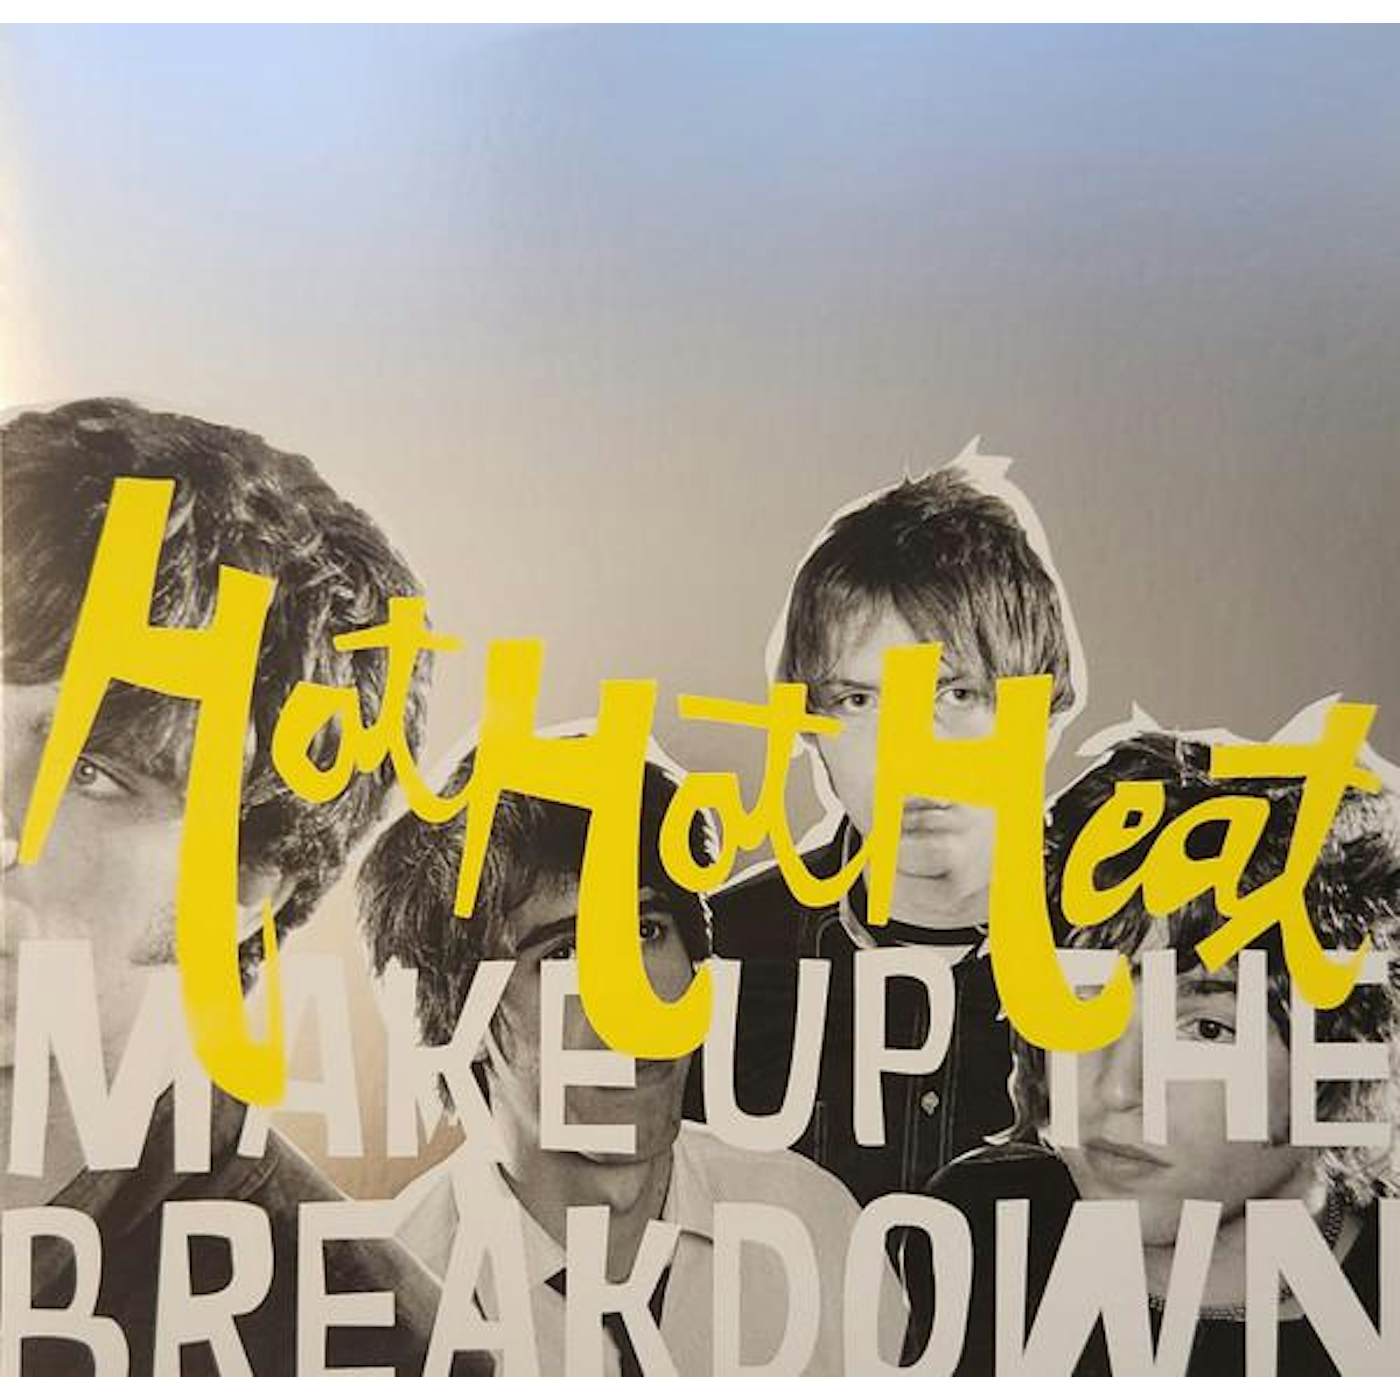 Hot Hot Heat Make Up The Breakdown (Opaque Yellow Vinyl/deluxe/remastered) Vinyl Record